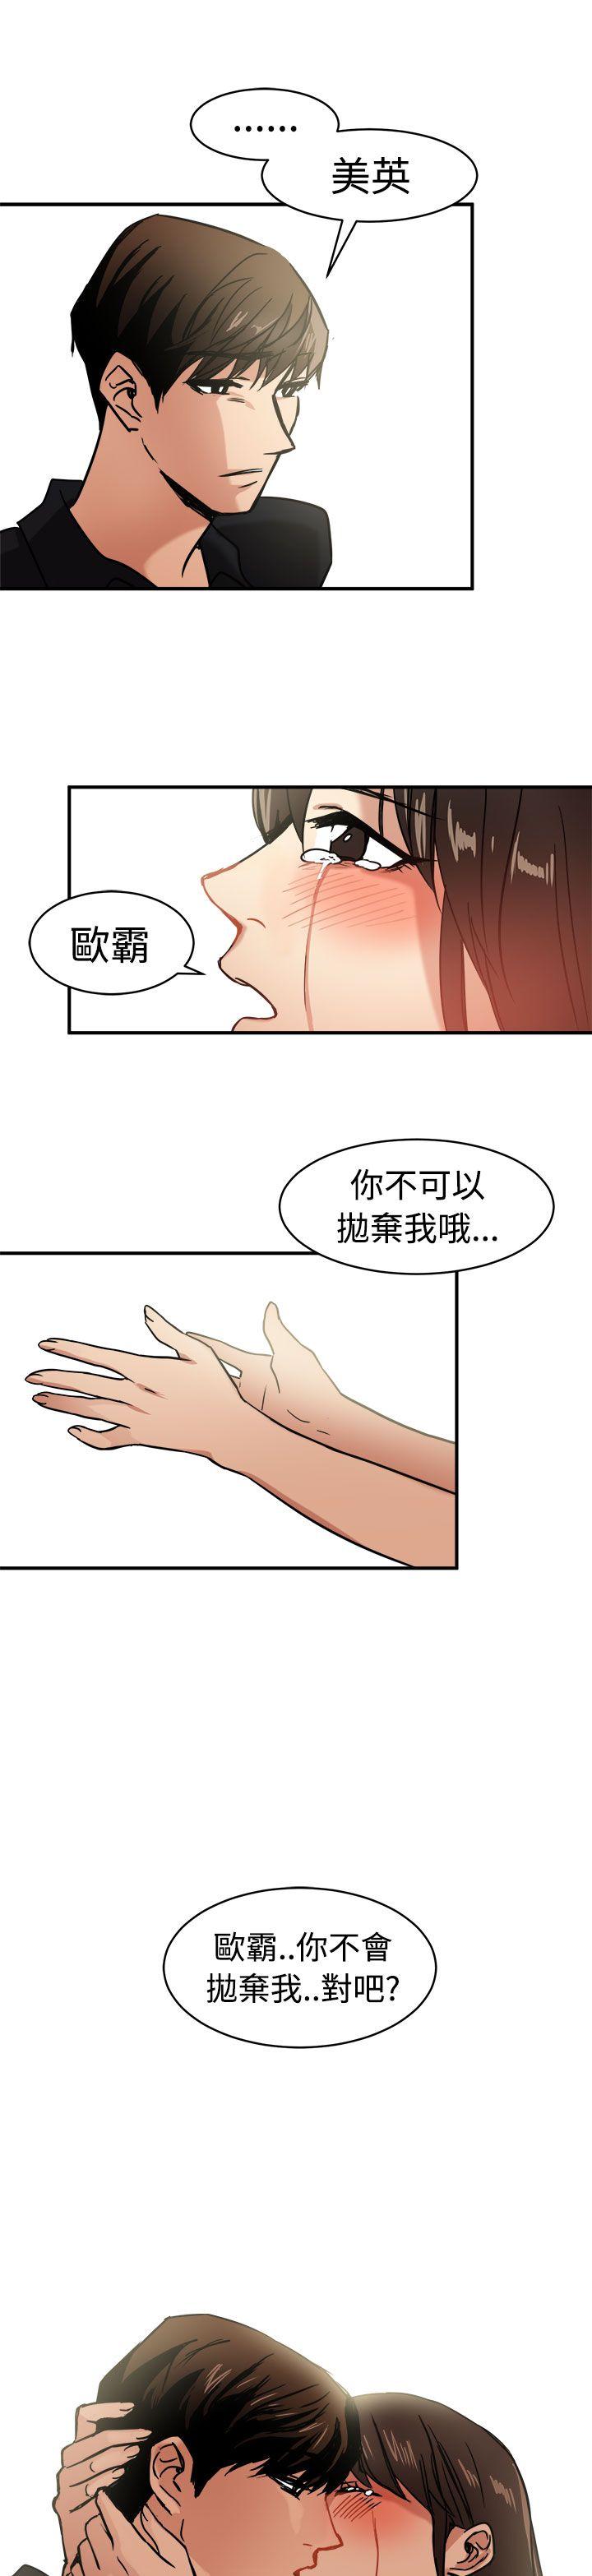 韩国污漫画 泥沼 第12话 30